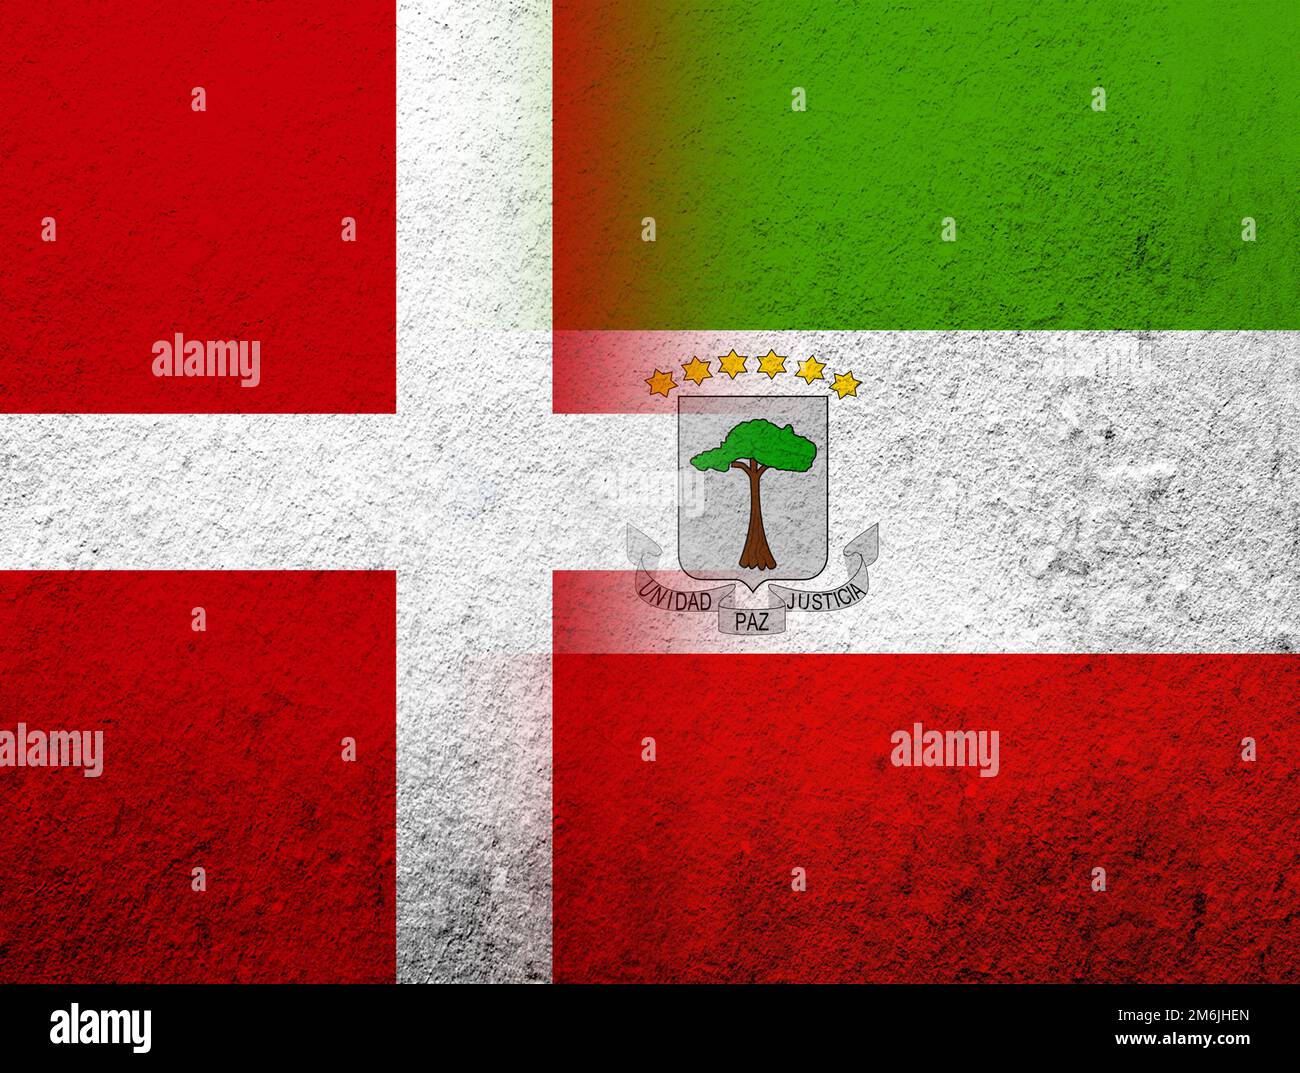 Le Royaume de Danemark drapeau national avec la République de Guinée équatoriale drapeau national. Grunge l'arrière-plan Banque D'Images